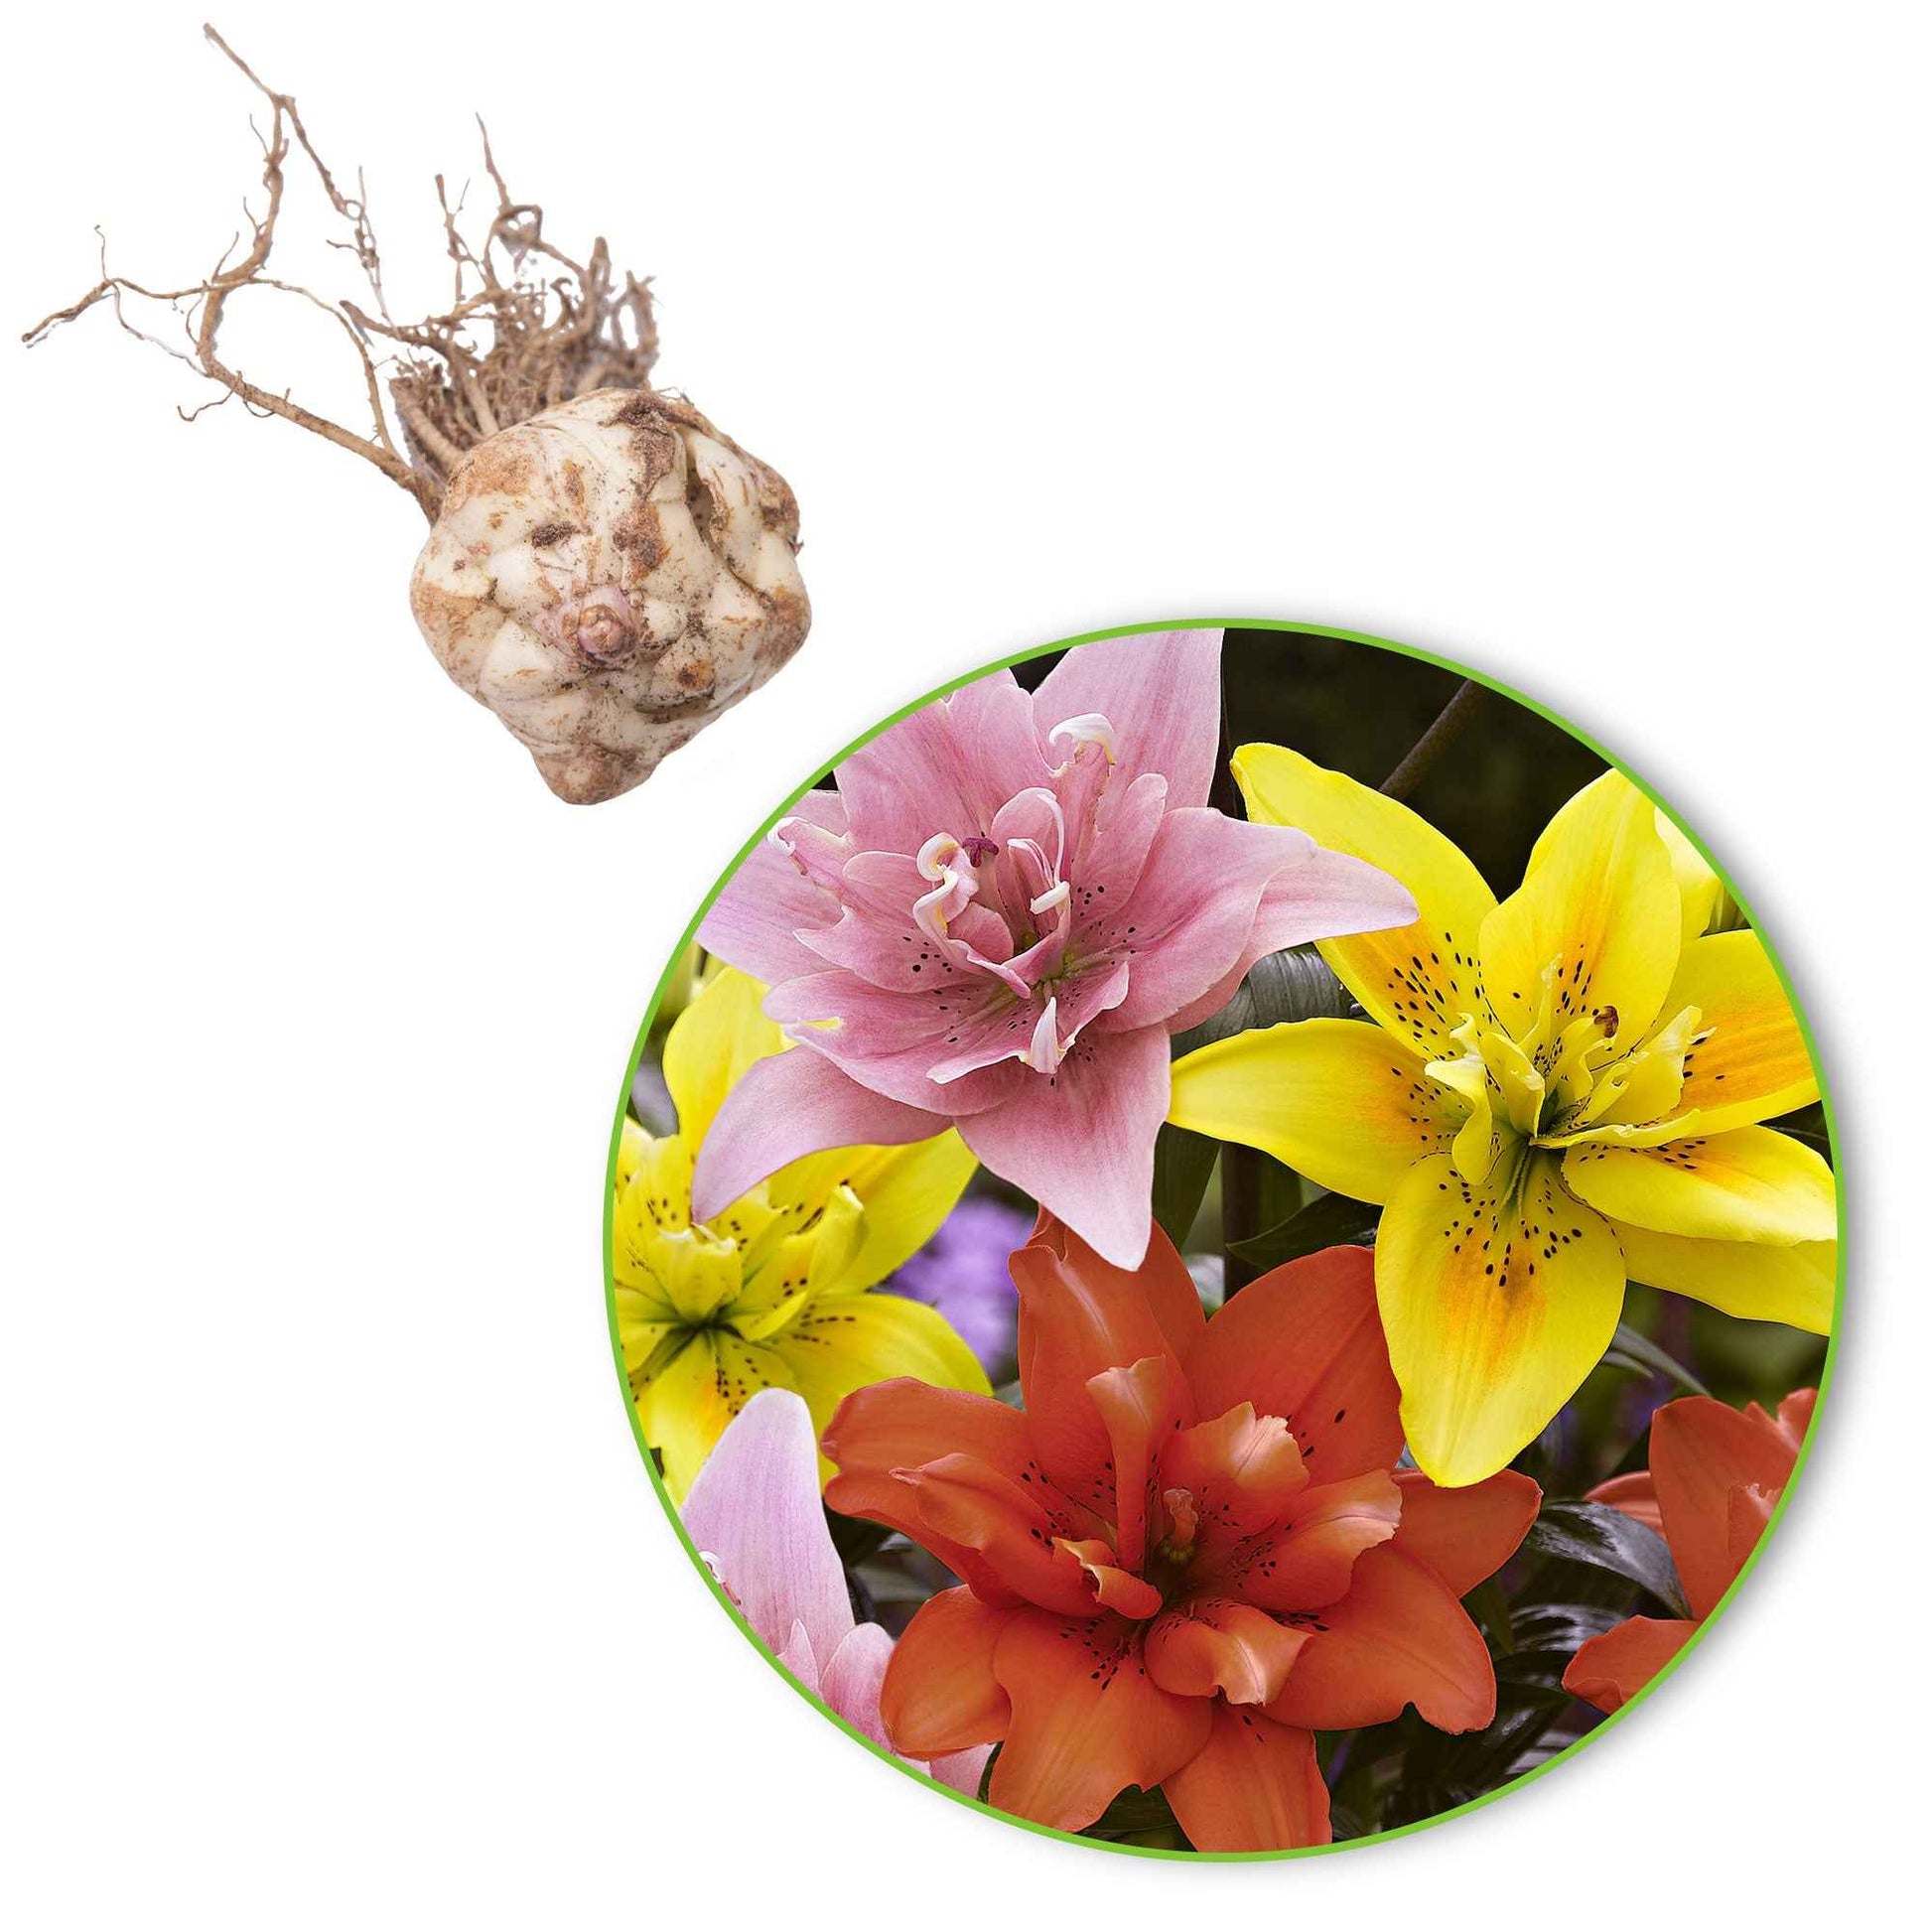 5x Dubbelbloemige lelies Lilium - Mix 'Ultimate Touch' - Alle populaire bloembollen